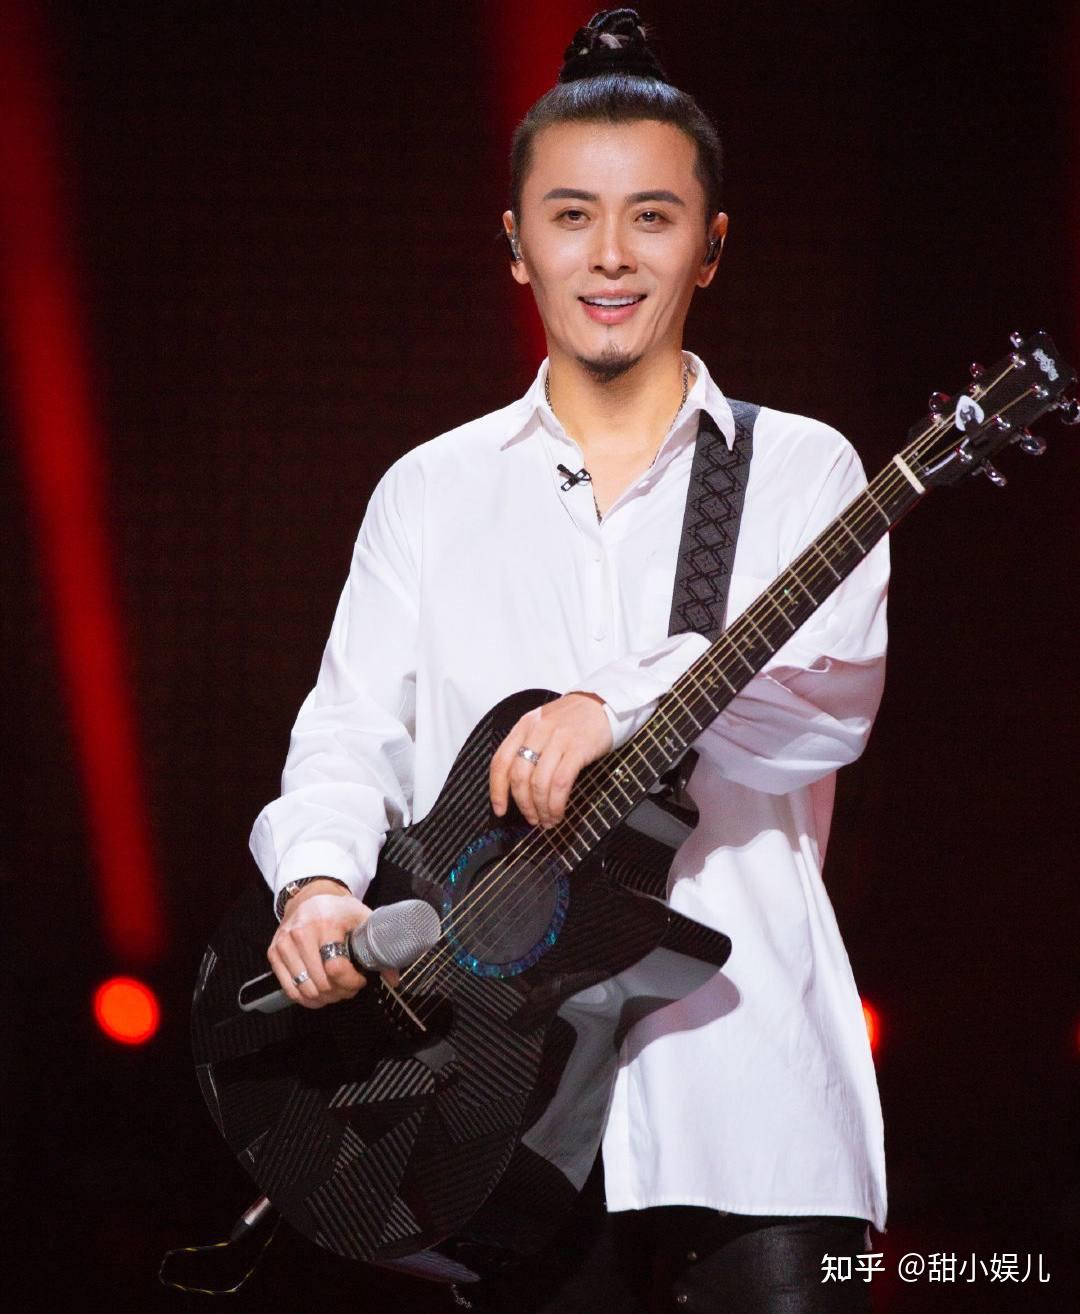 陈辉是面孔乐队的主唱,在参加《披荆斩棘的哥哥》之前就参加过音乐